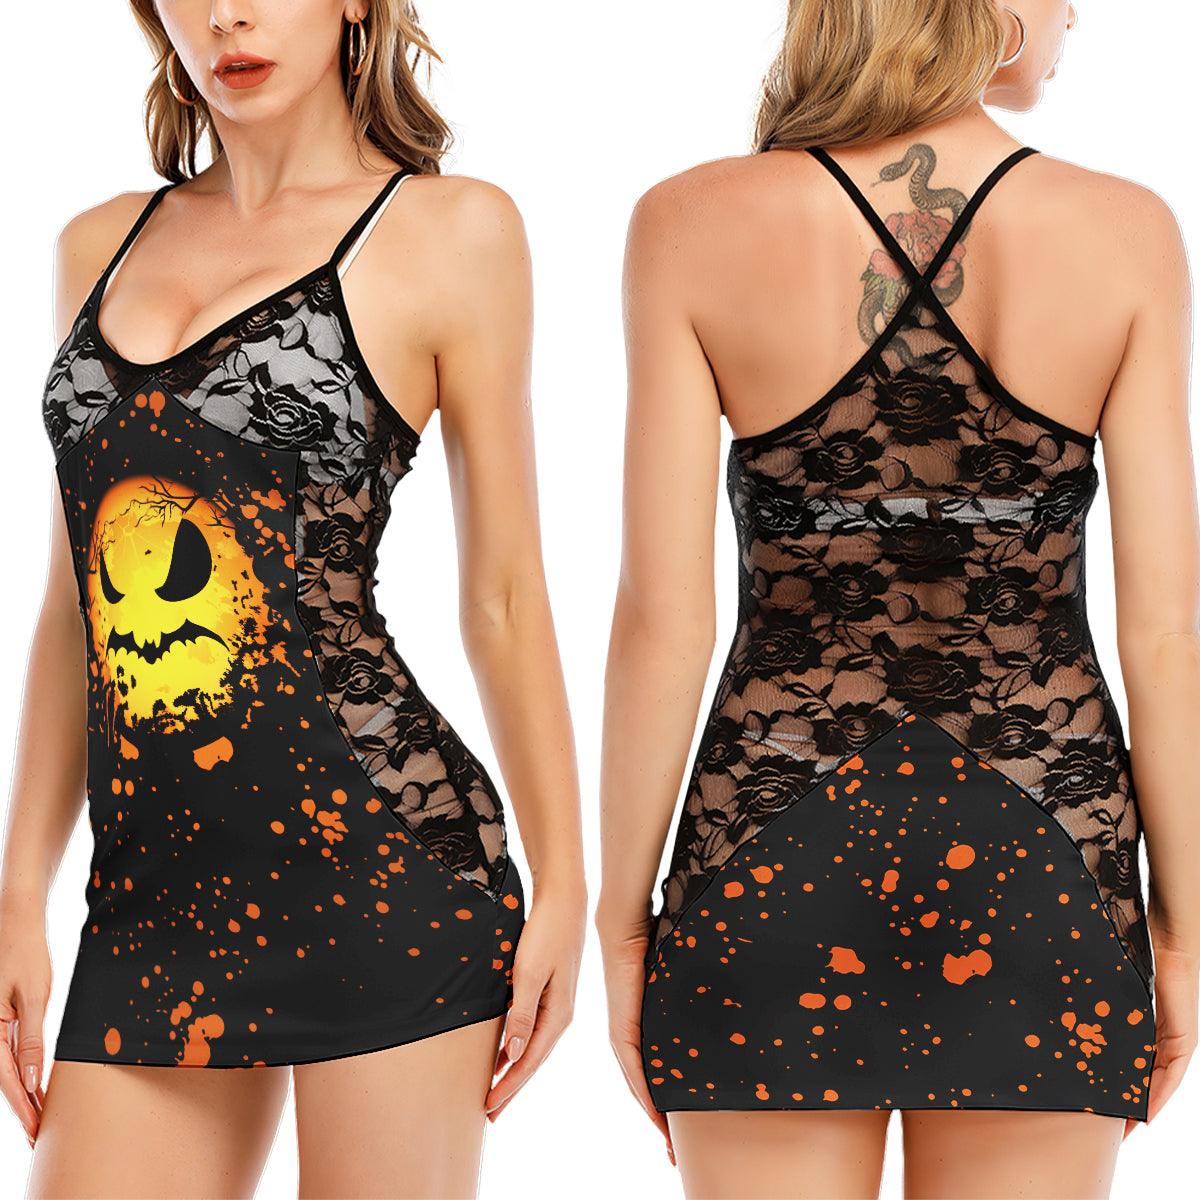 Orange Halloween Scary Face Women's Black Lace Babydolls Nightgowns | Women Sleepwear Babydoll, Nightgowns